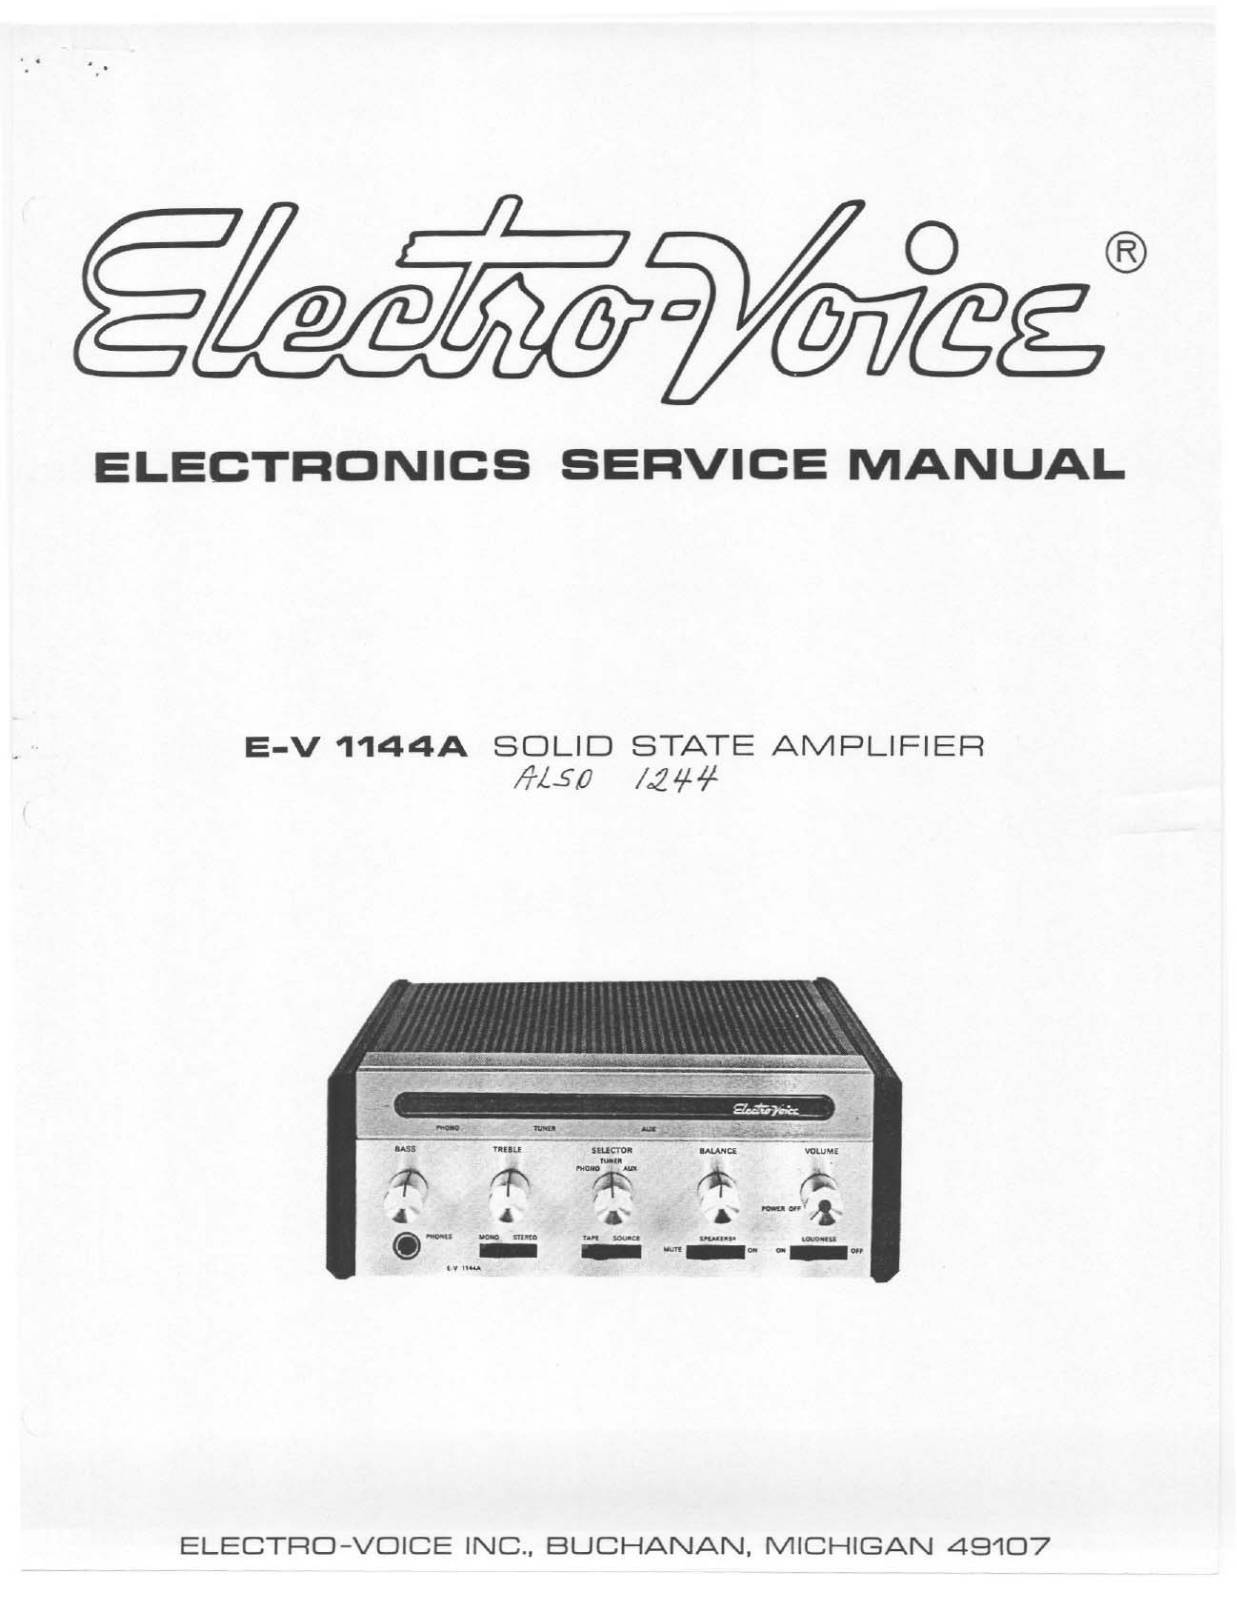 Electro-Voice E-V 1144